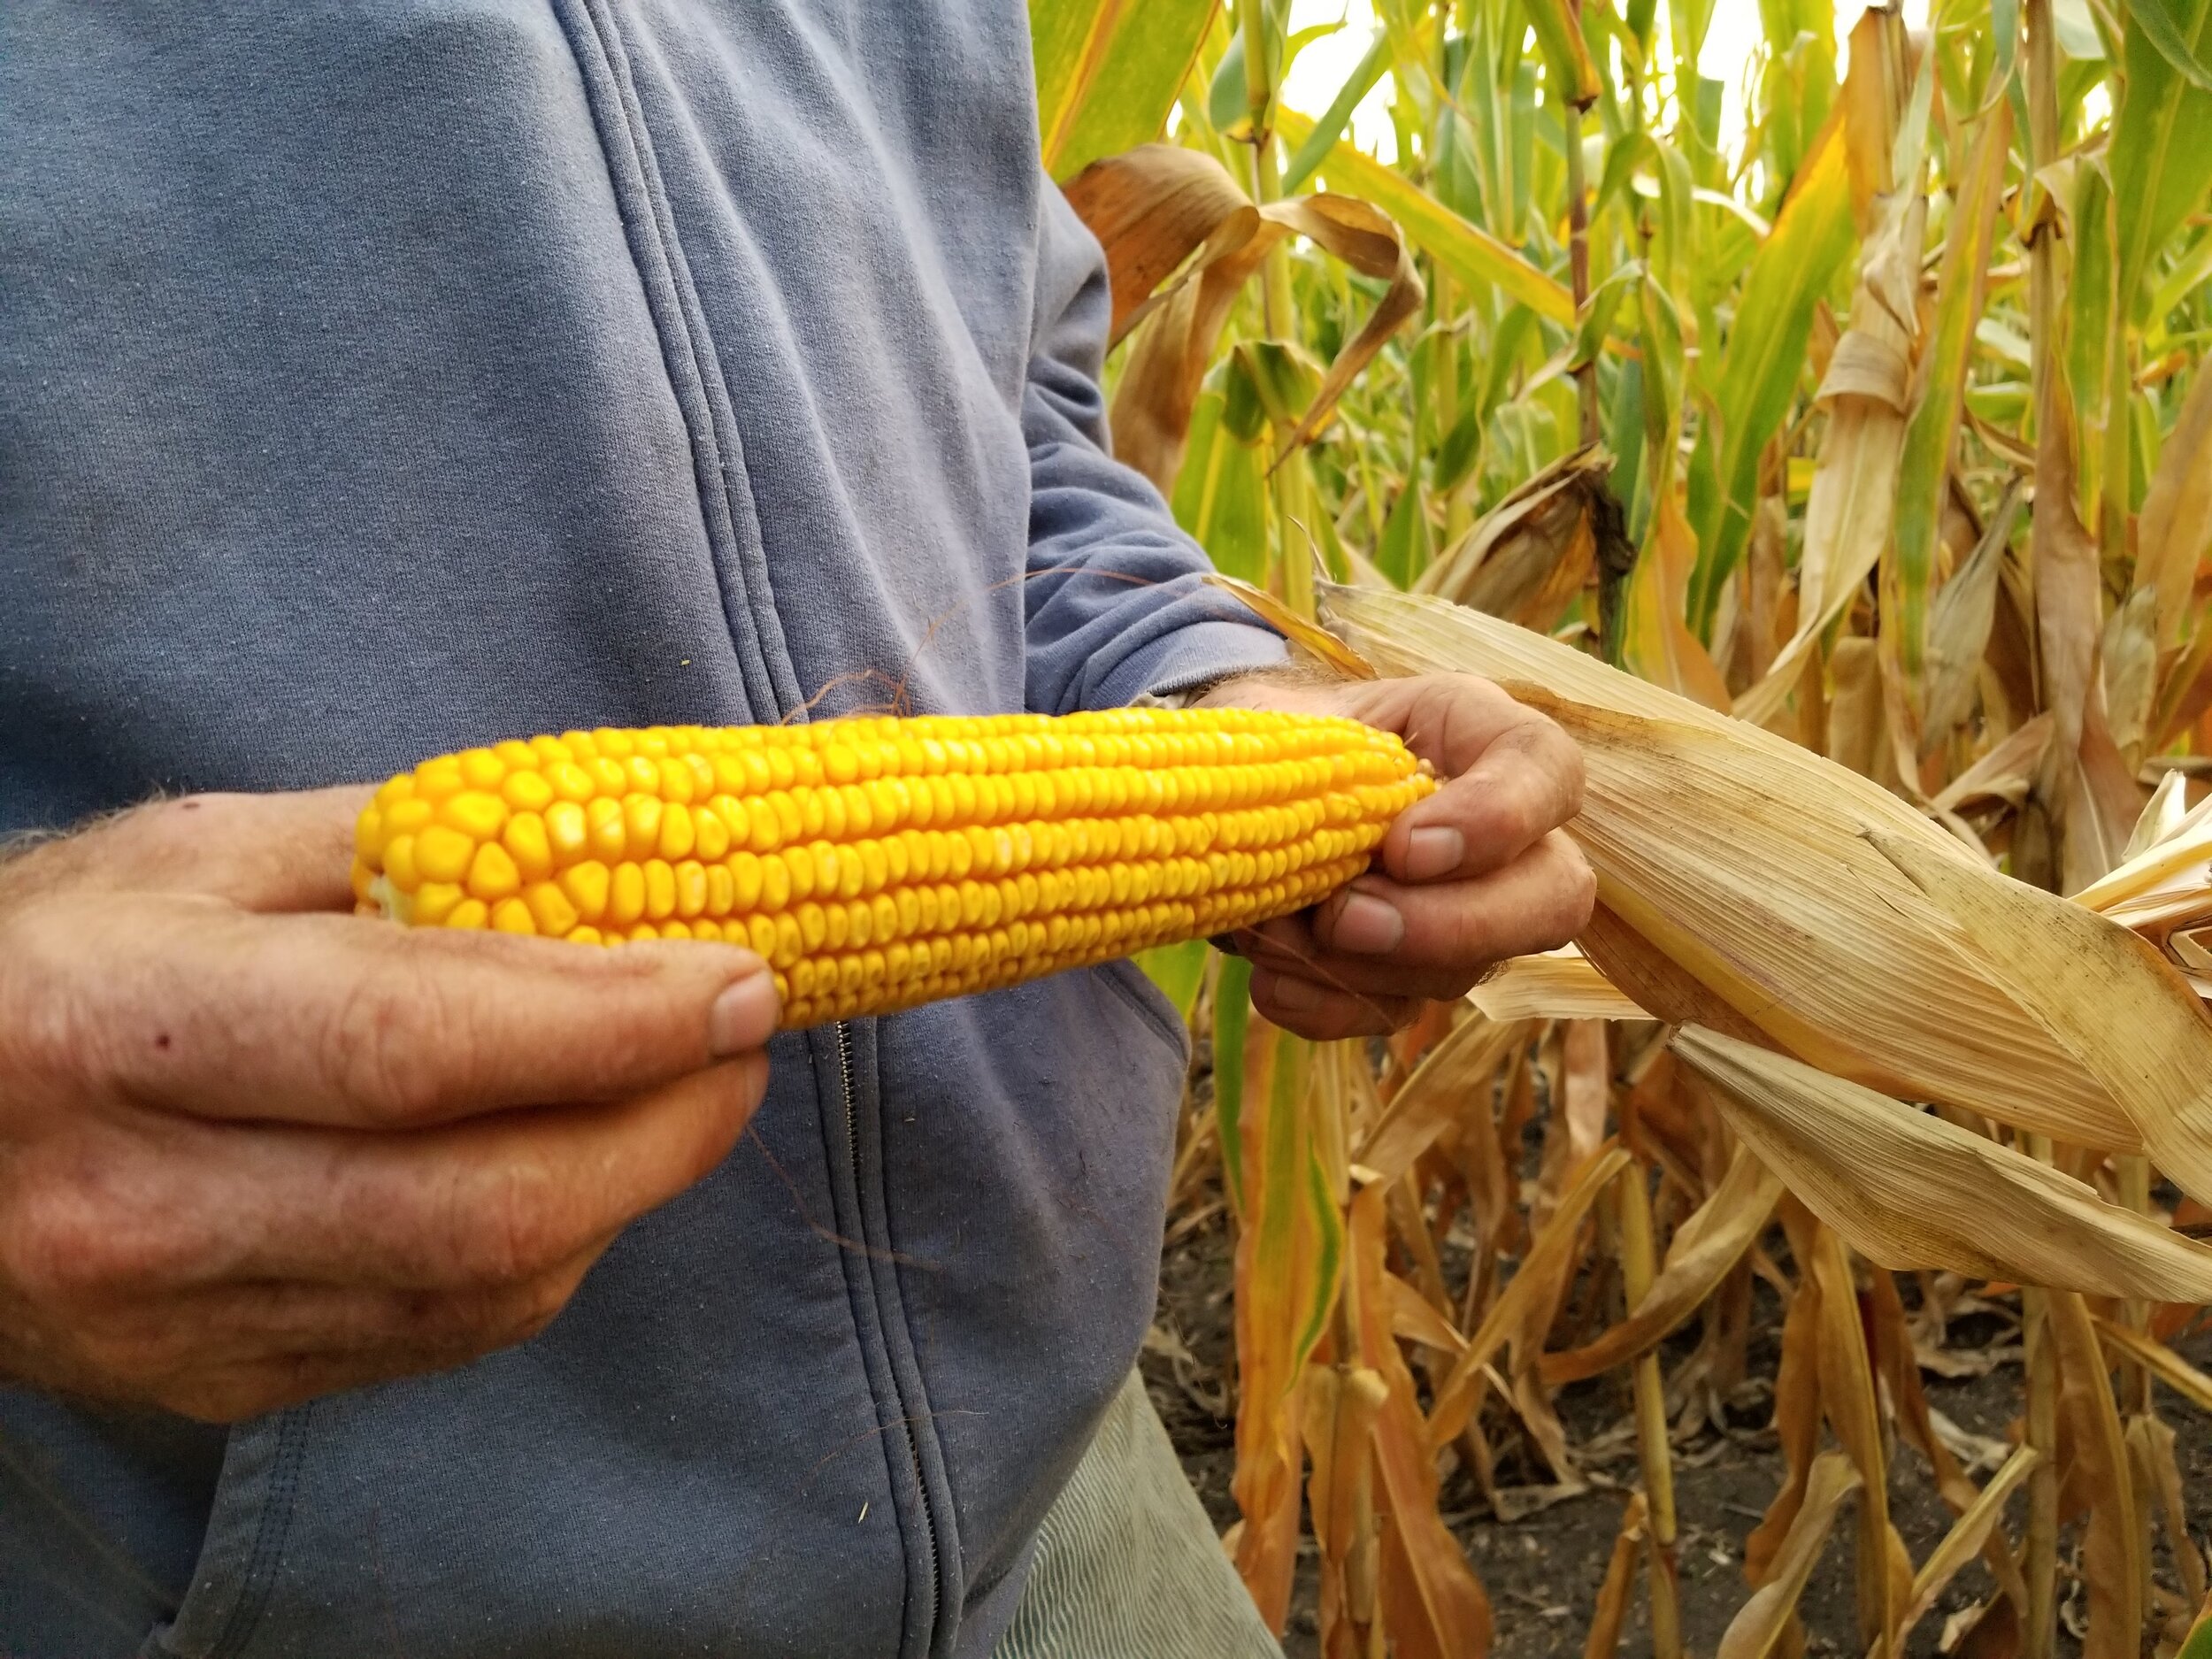 09.25.20 Ear of organic corn